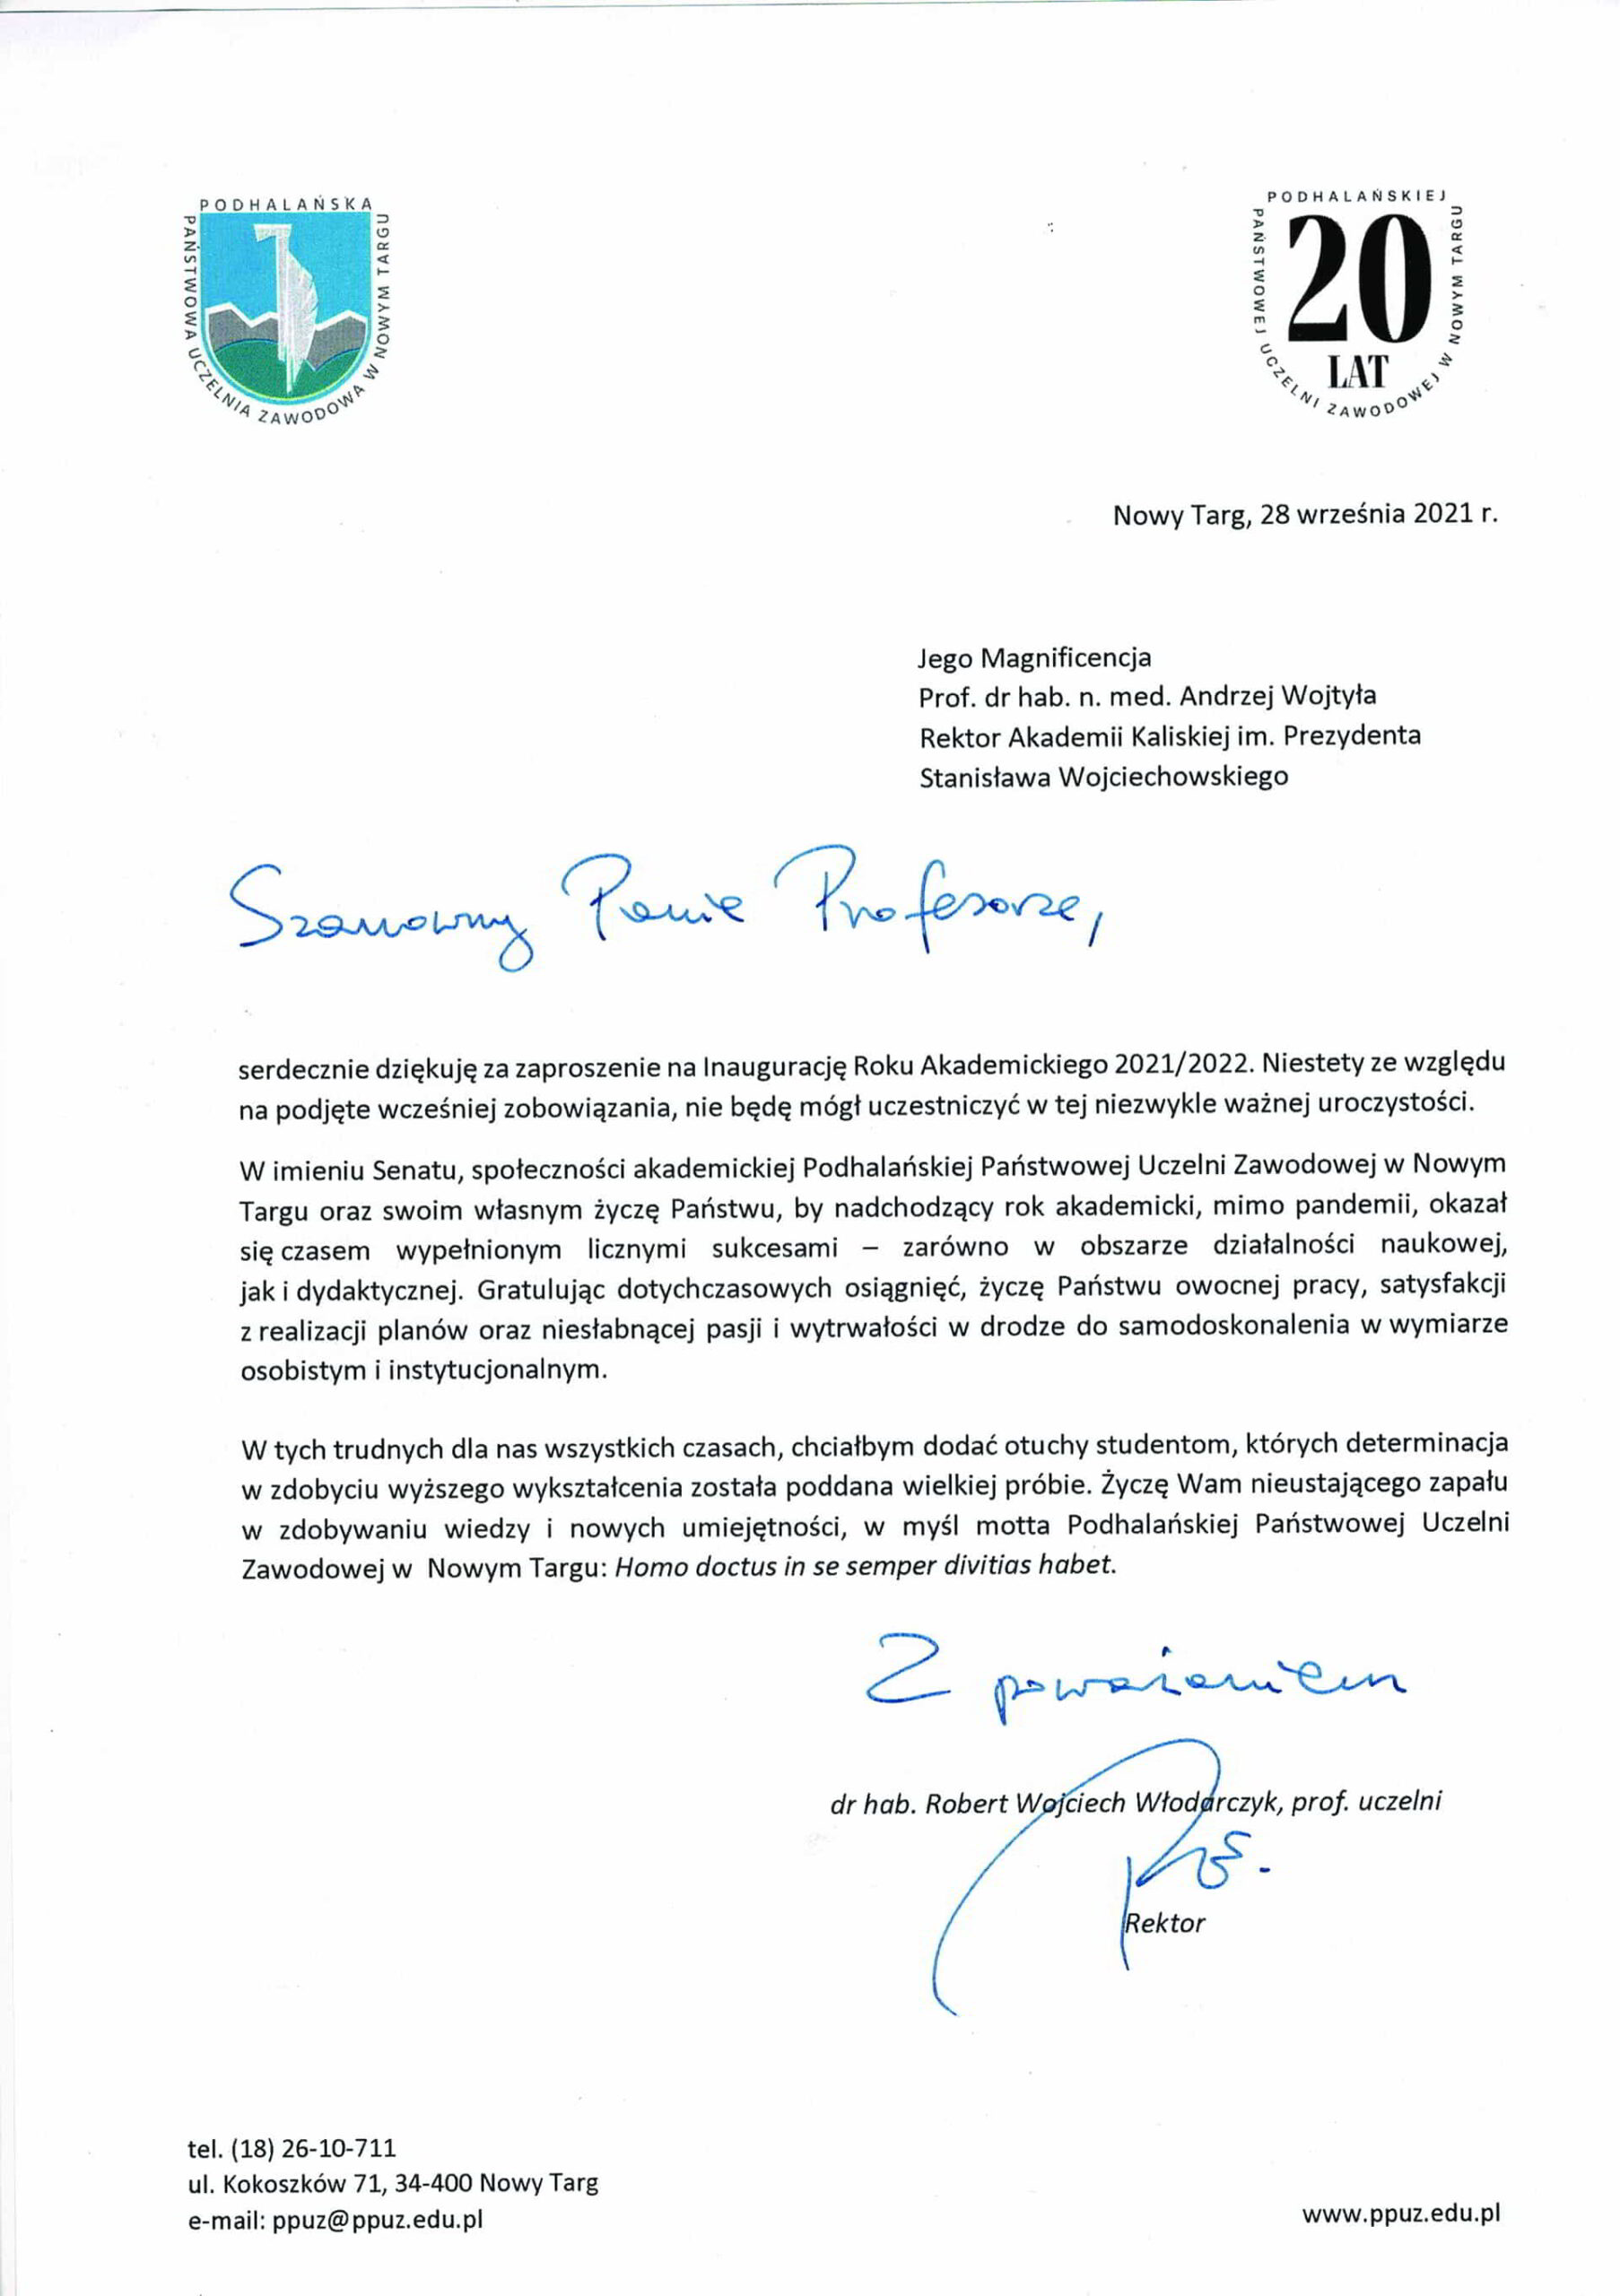 życzenia inauguracja roku akademickiego 2021/2022 Rektor PPUZ w Nowym Targu